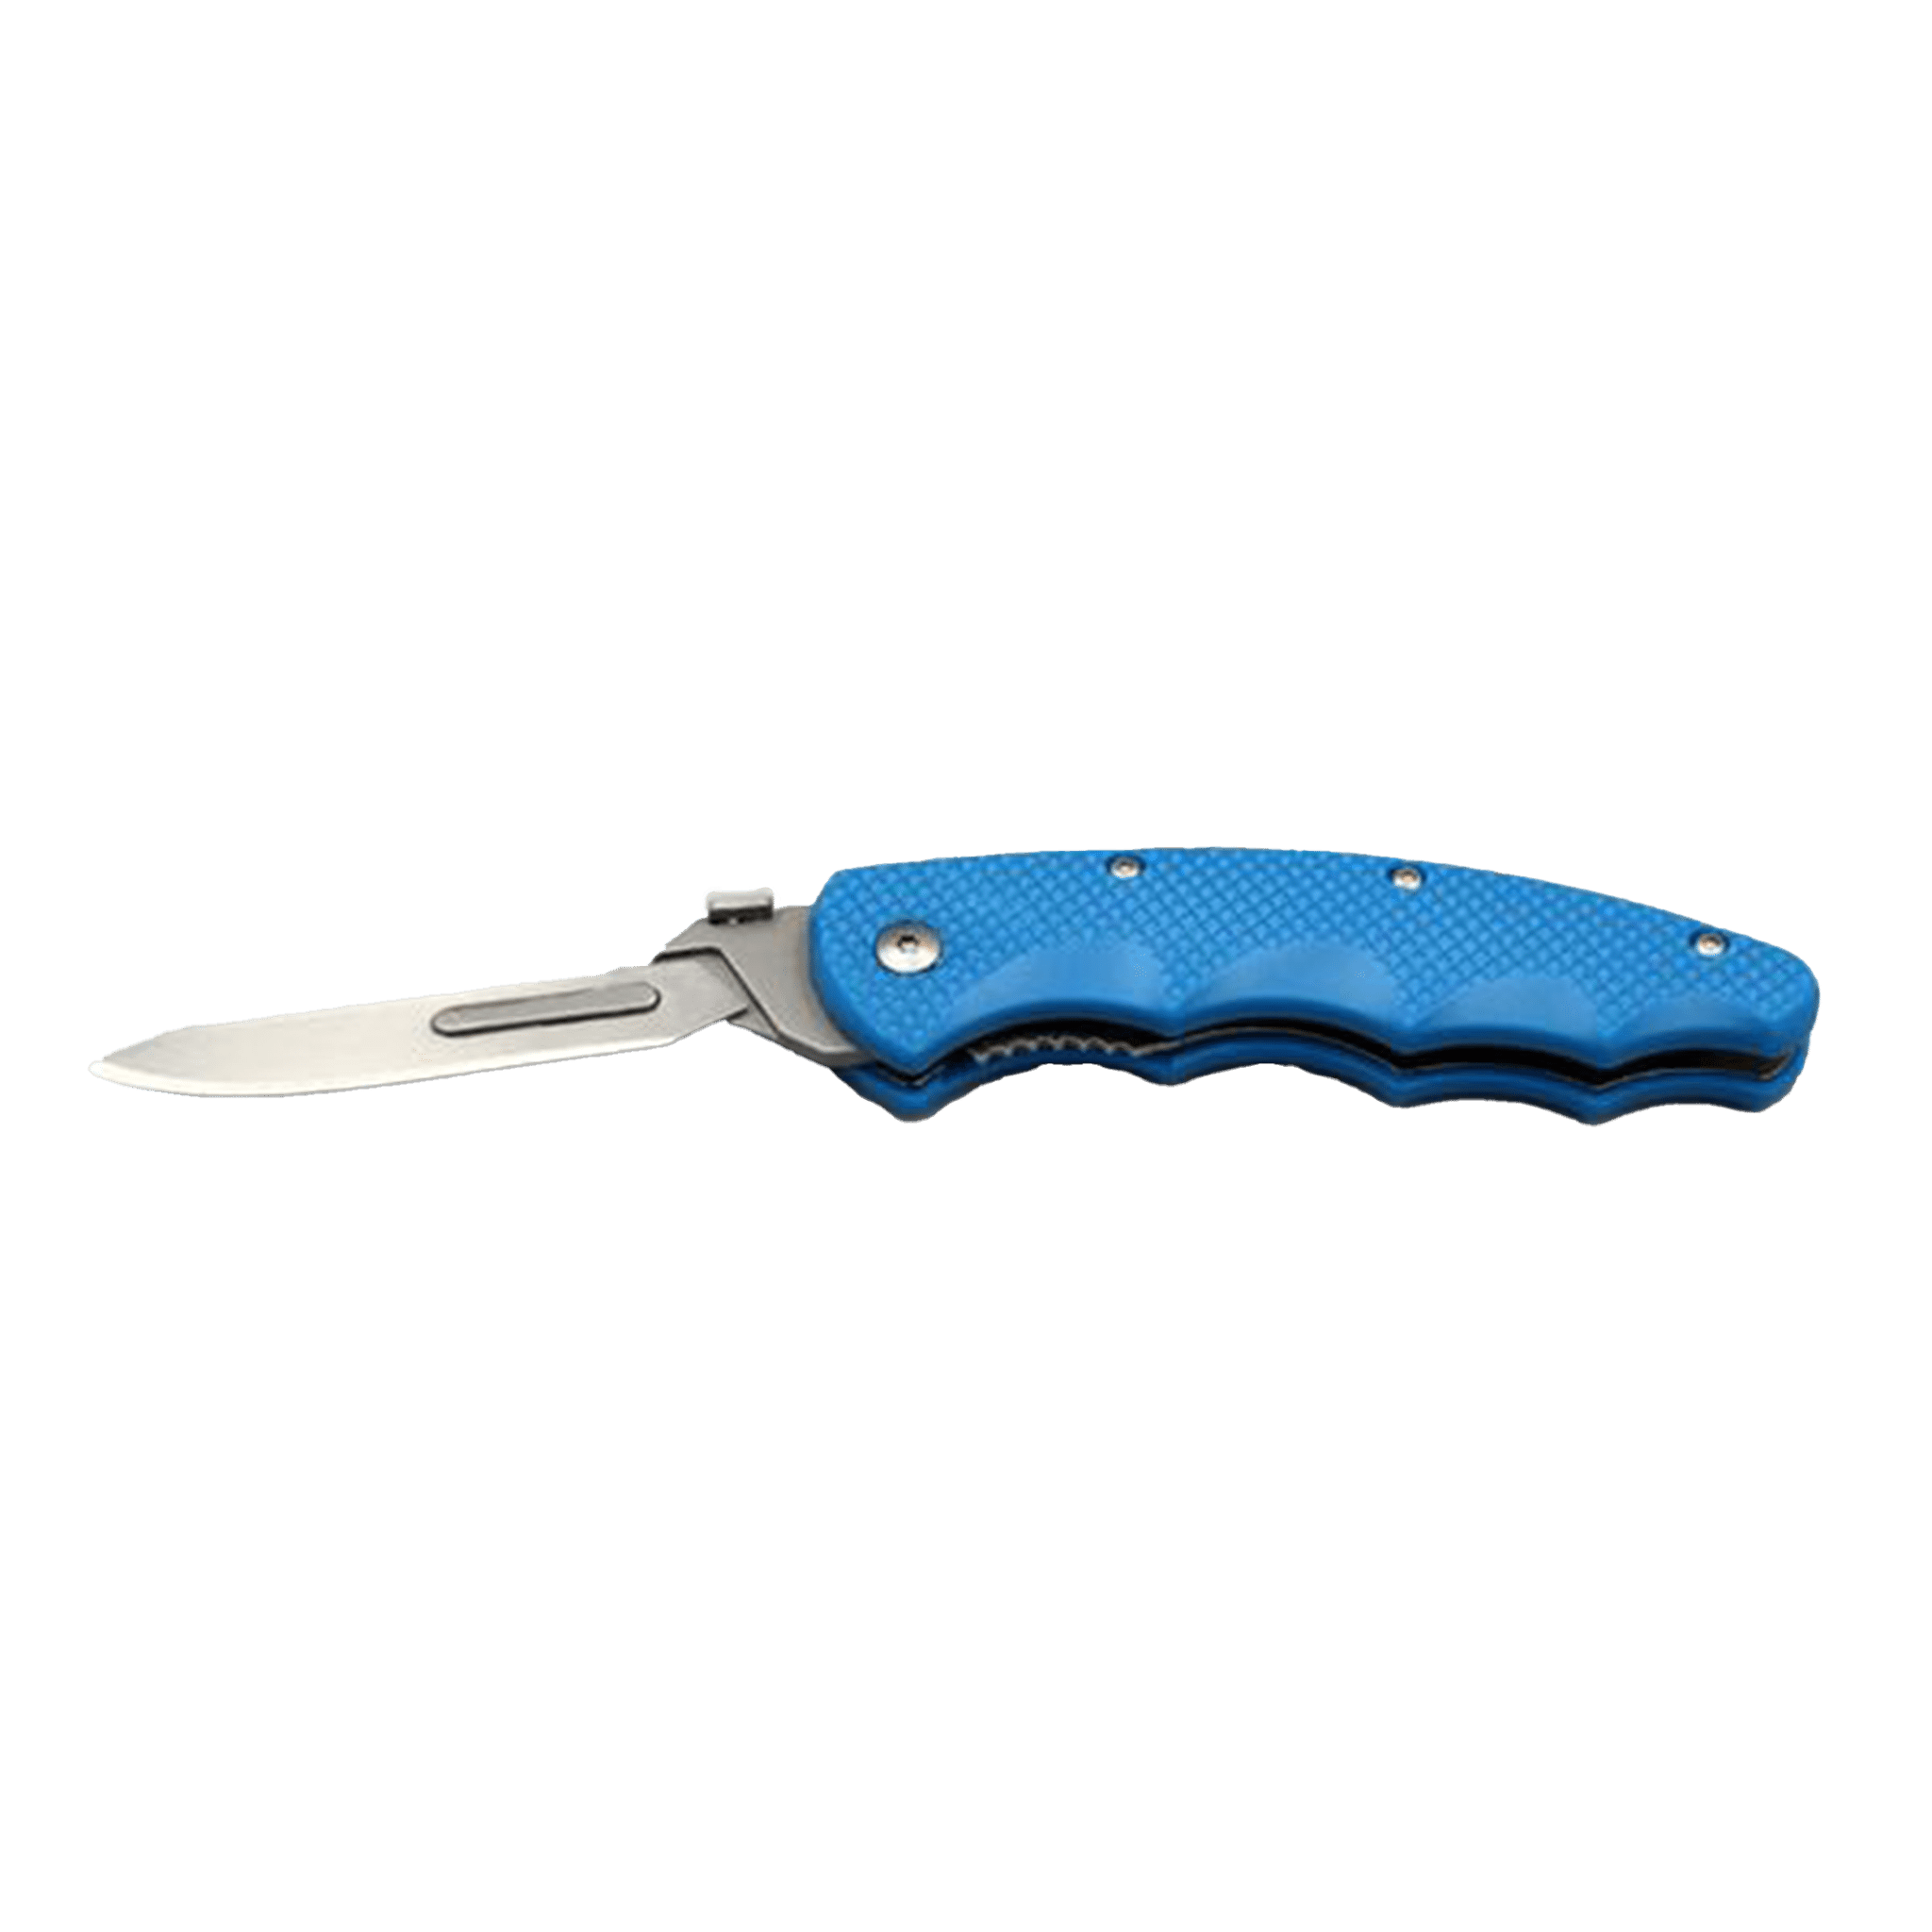 Wiebe Arctic Fox Knife - Matuska Taxidermy Supply Company